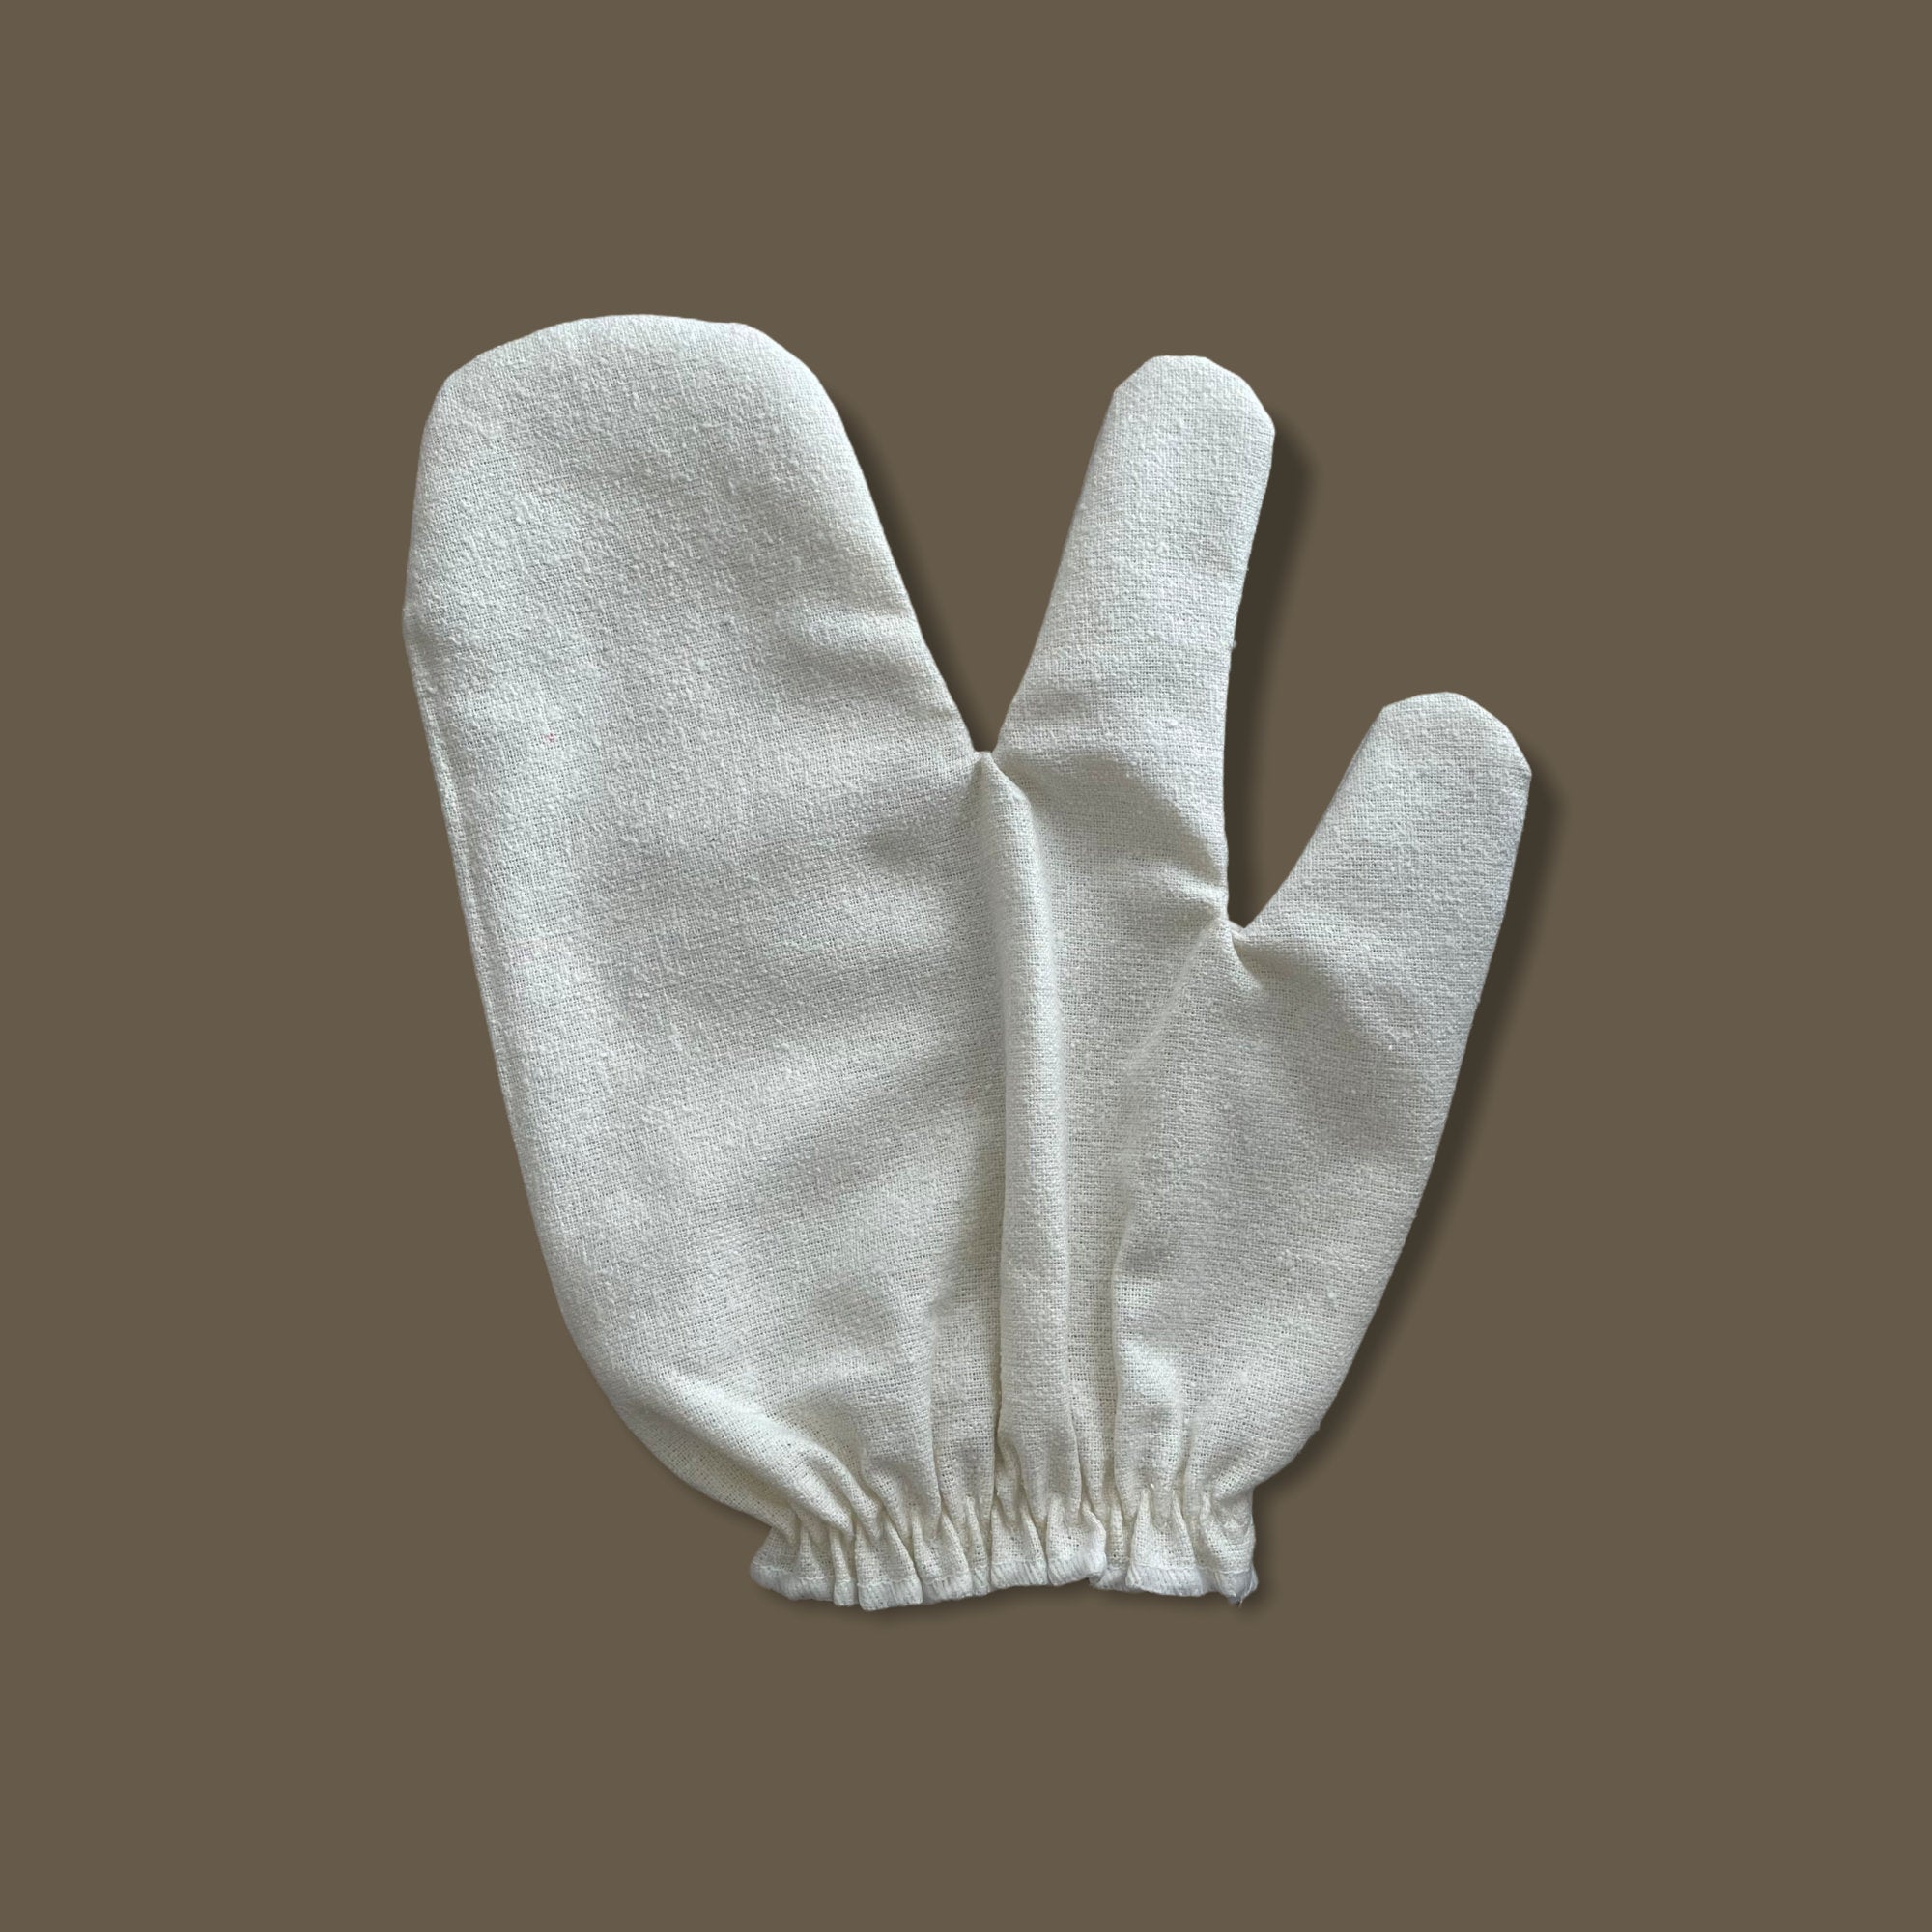 100% Raw Silk Garshana Glove, Pre-/Shower Mitt, Gentle Exfoliating Bath Gloves, Raw Silk Massage Gloves